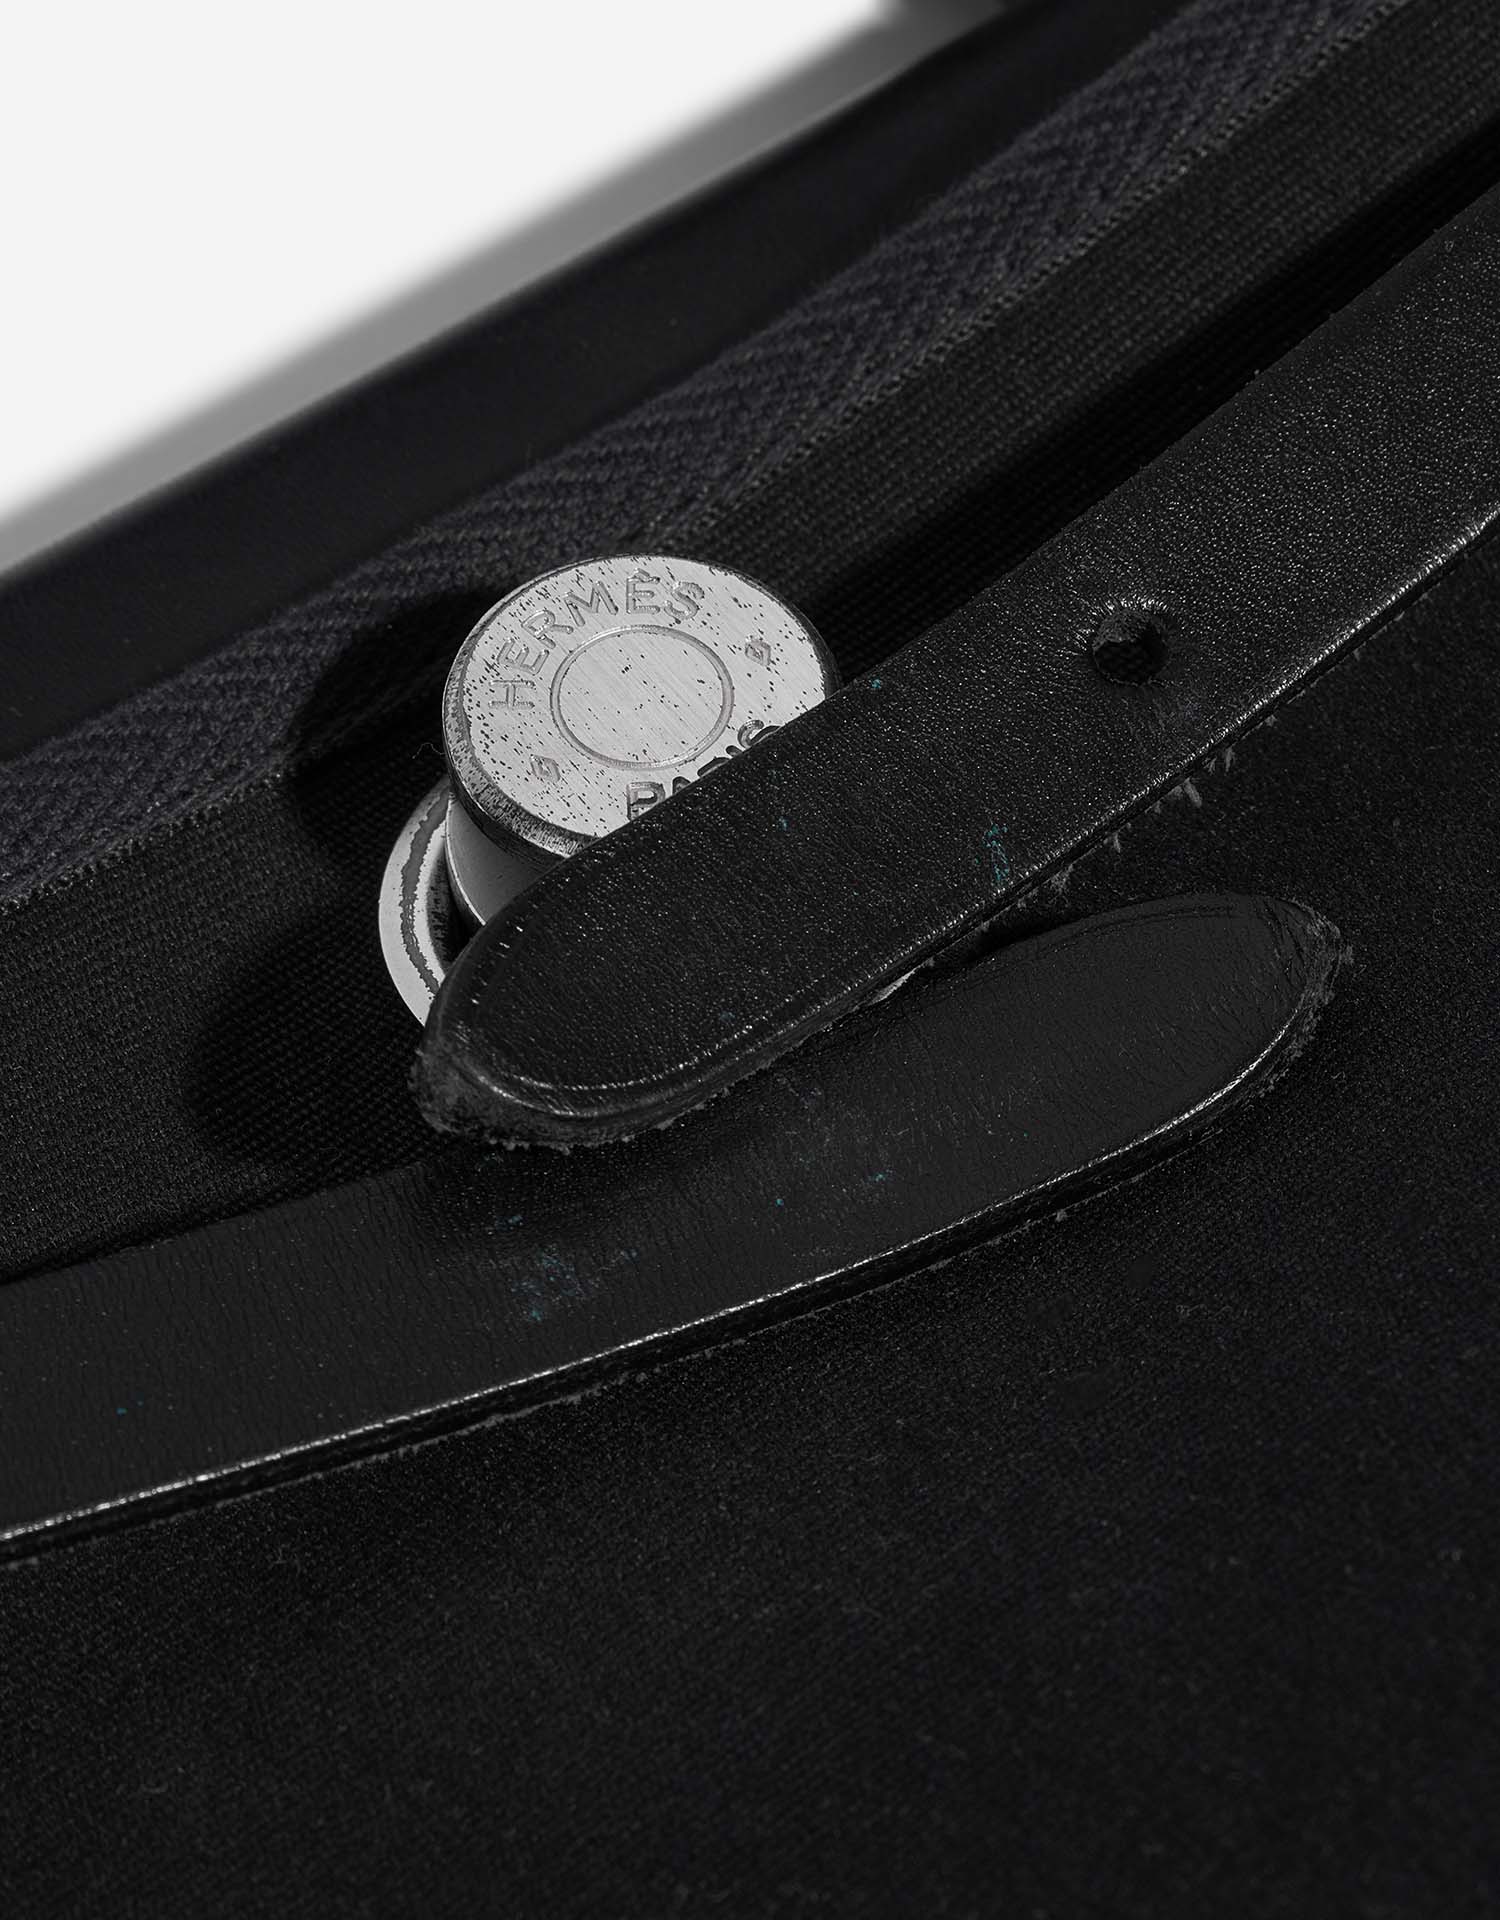 Hermès Herbag 31 Schwarz Gebrauchsspuren| Verkaufen Sie Ihre Designertasche auf Saclab.com